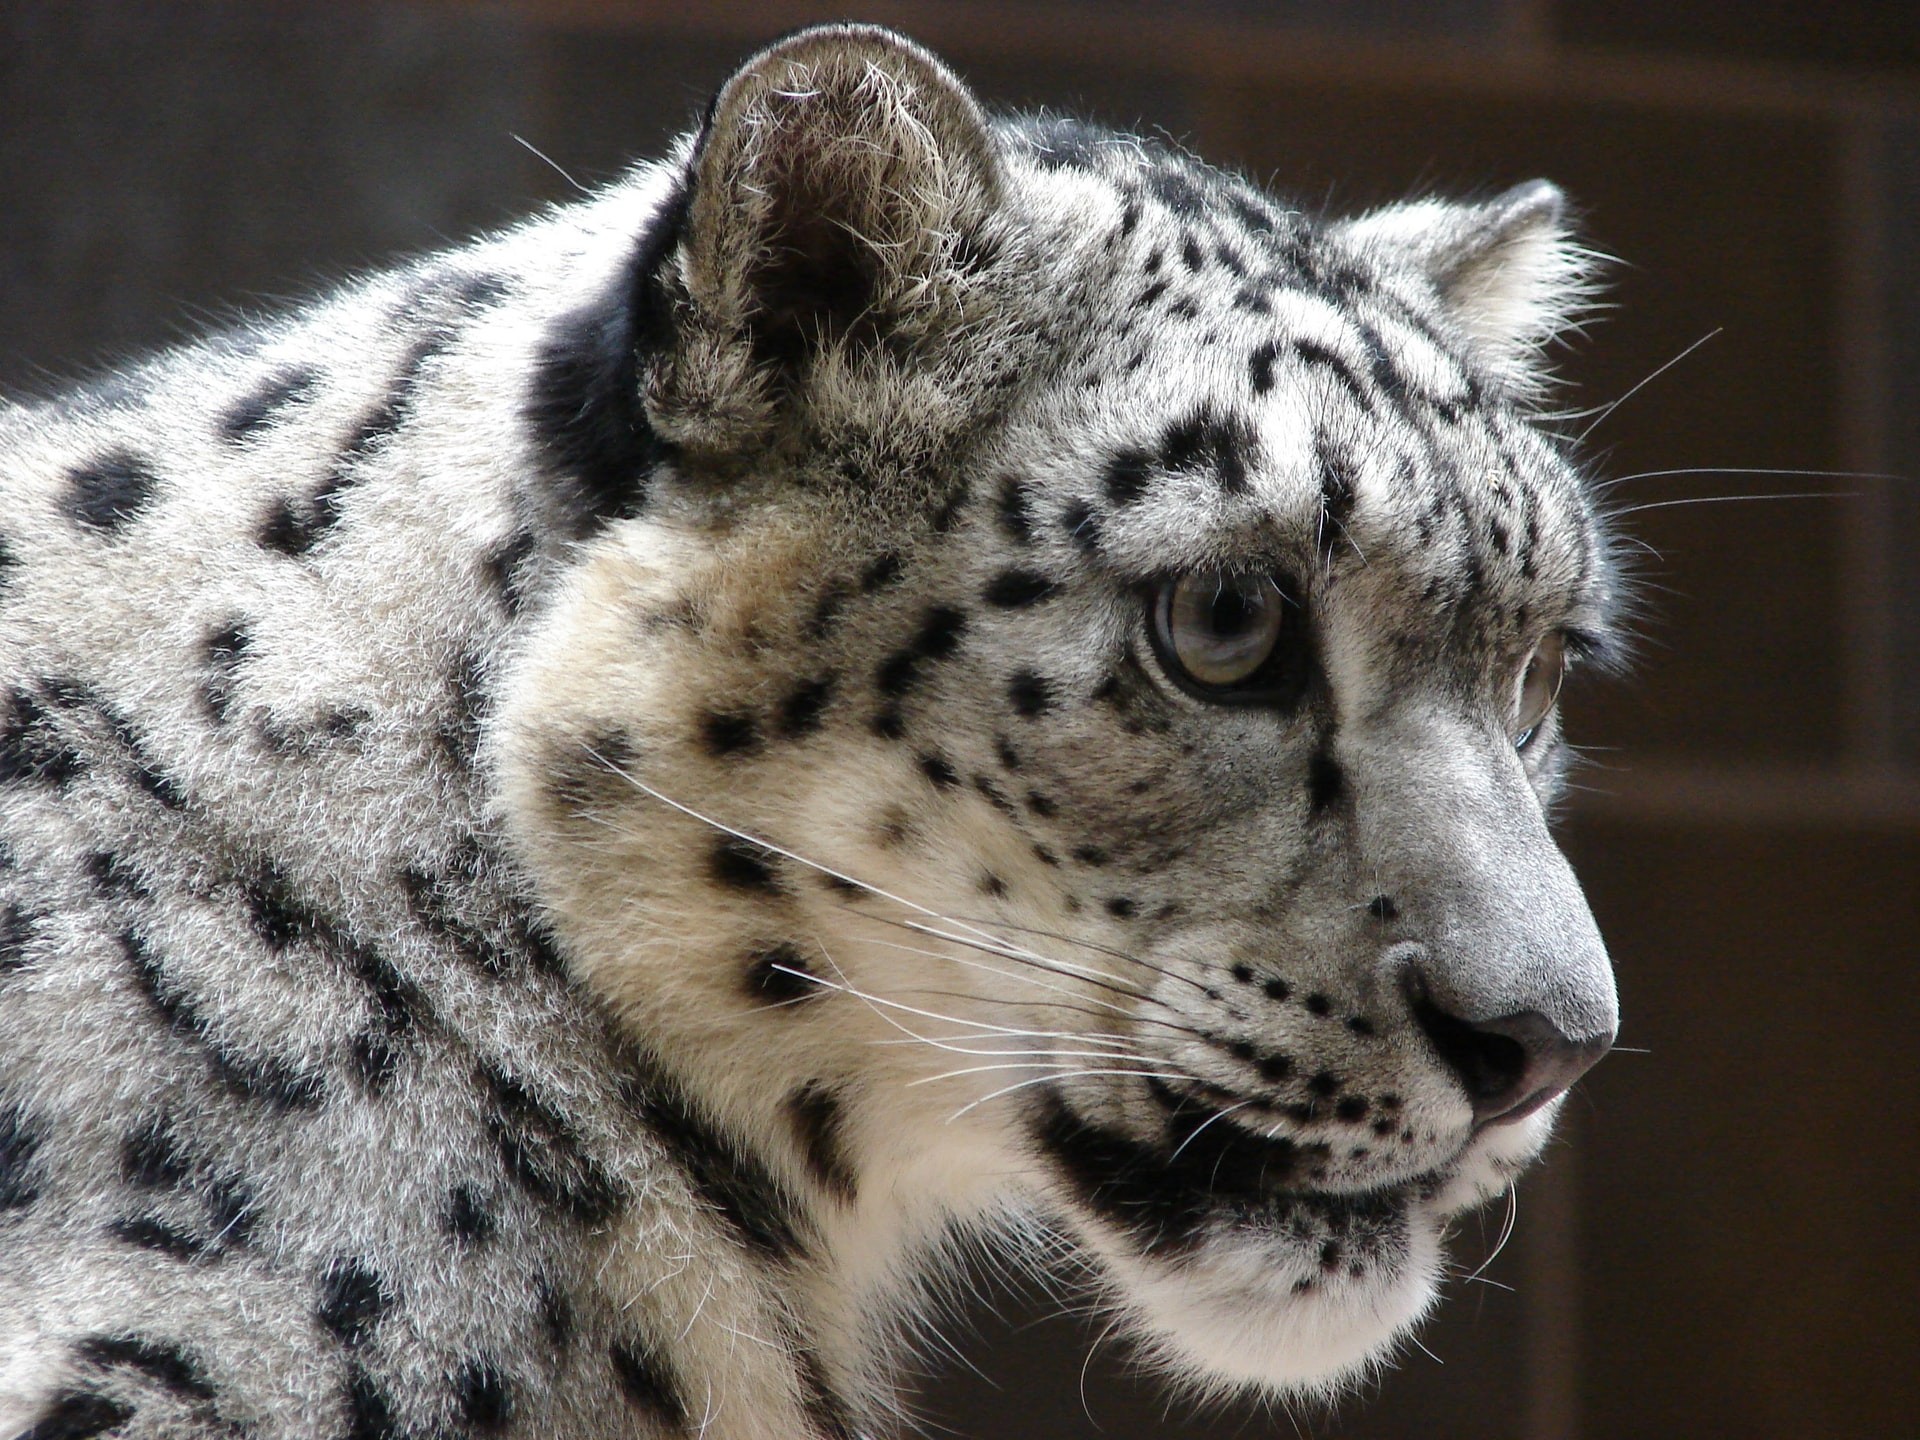 Leopardos-das-neves estão classificados como vulneráveis na Lista Vermelha de Espécies Ameaçadas (Foto: Dave Sherrill/Unsplash)